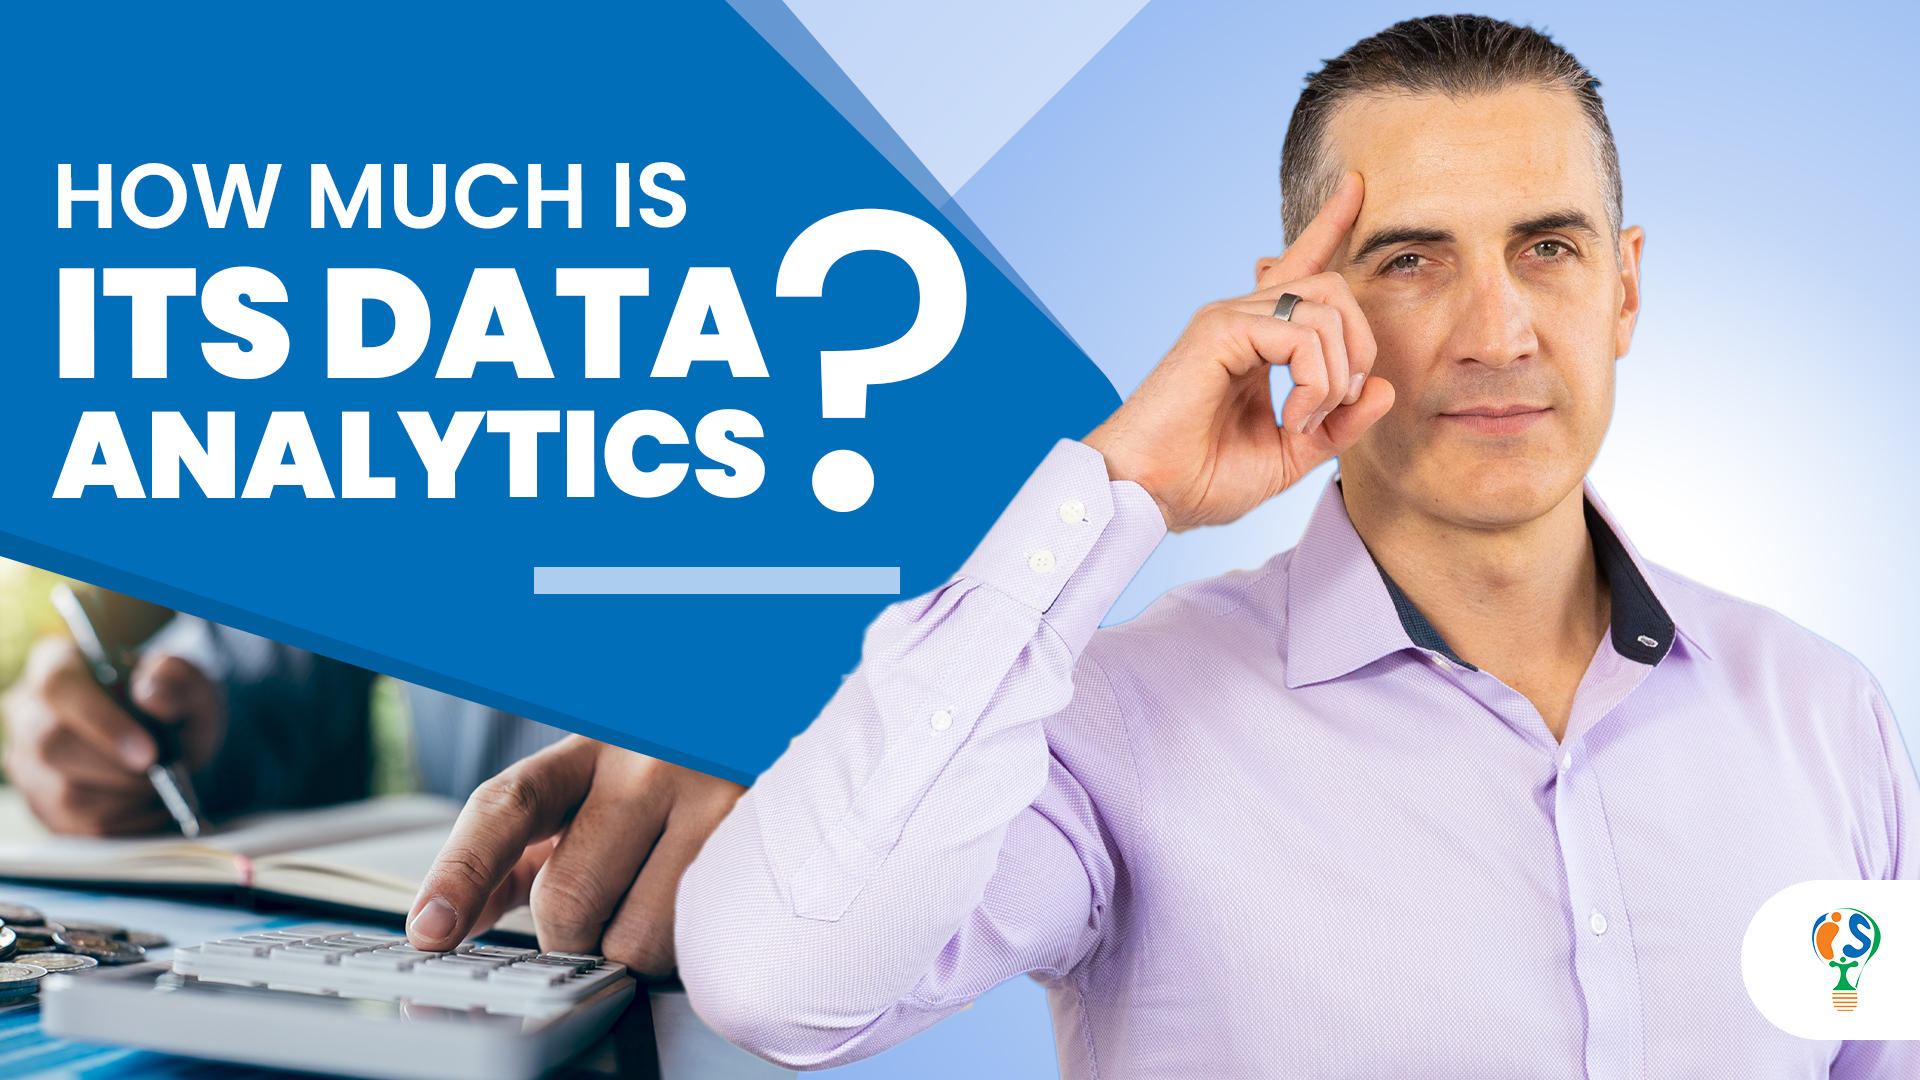 how much is data analytics